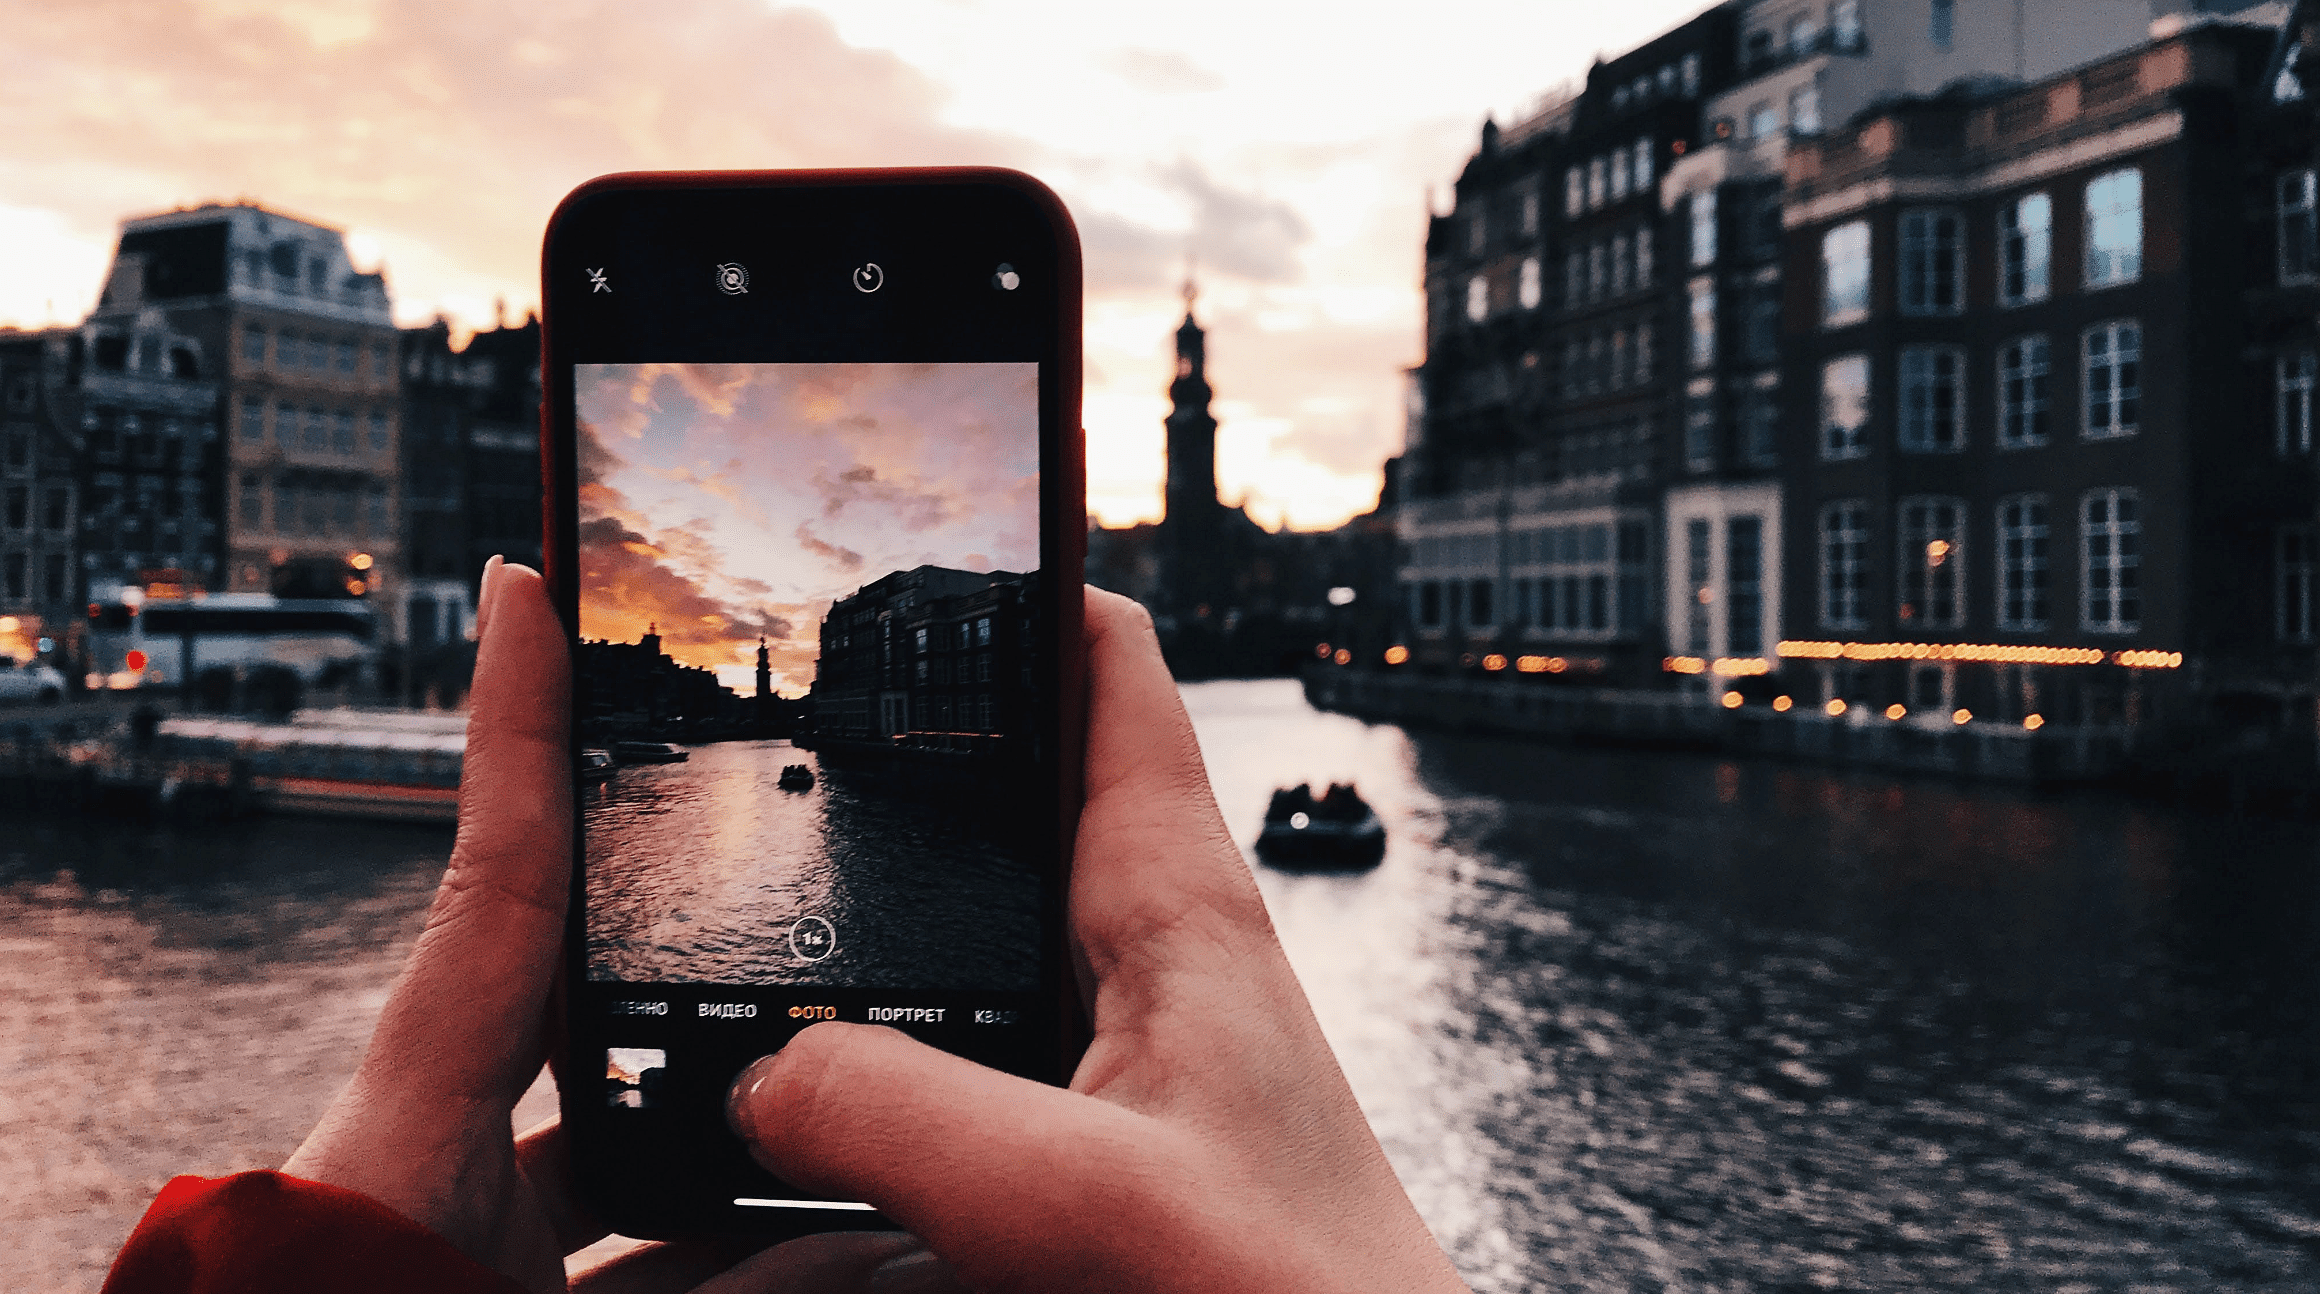 אדם משתמש בטלפון חכם כדי לצלם תמונה בזמן טיול באירופה